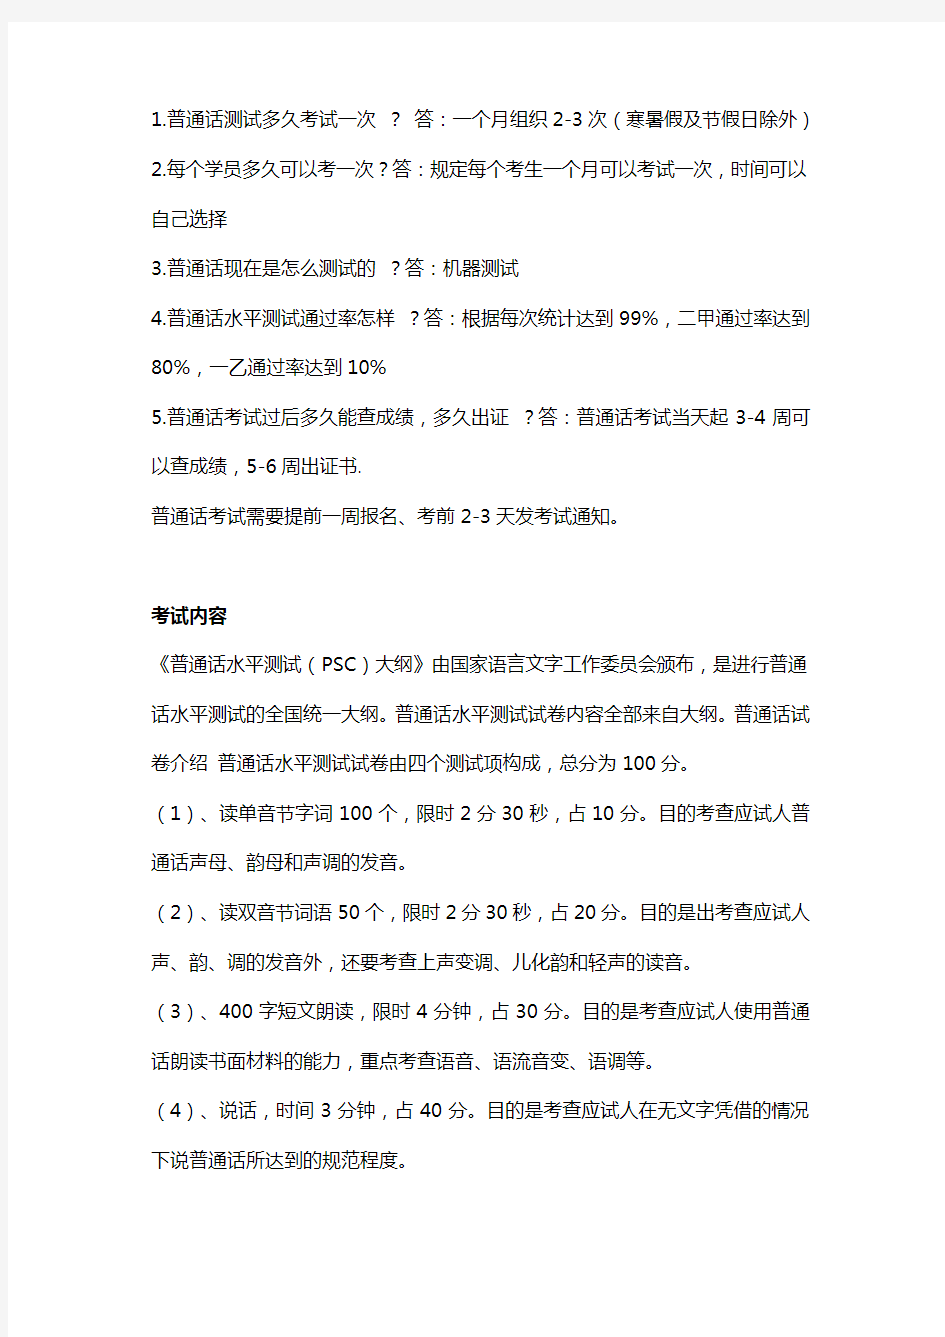 2020年河南驻马店普通话等级考试报名时间和地点(普通话)